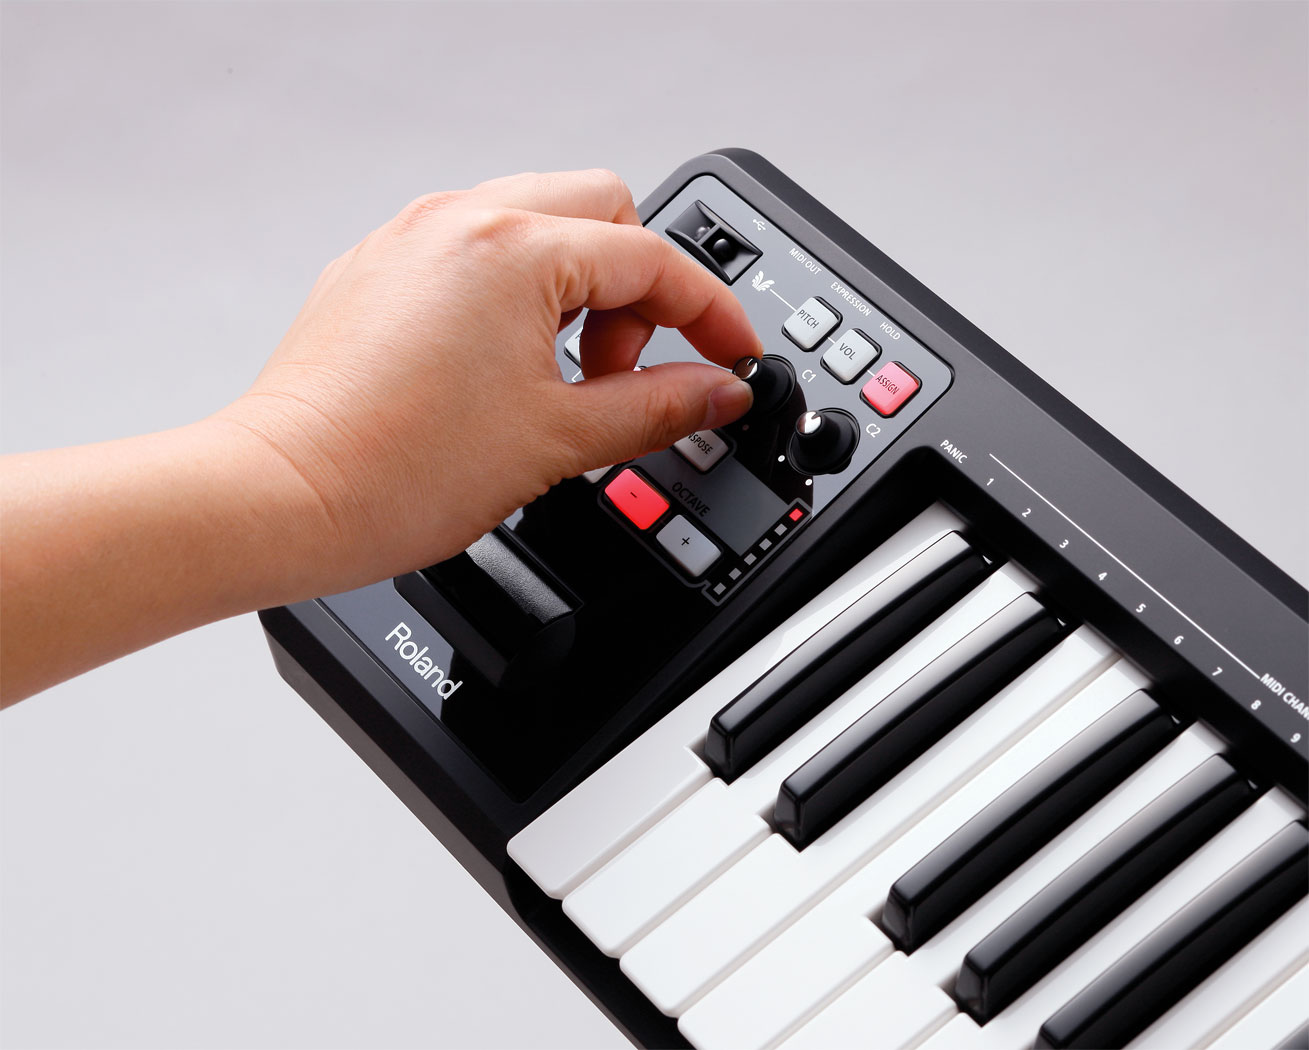 お得なキャンペーンも 新品 A-49 Controller Keyboard MIDI Roland 鍵盤楽器